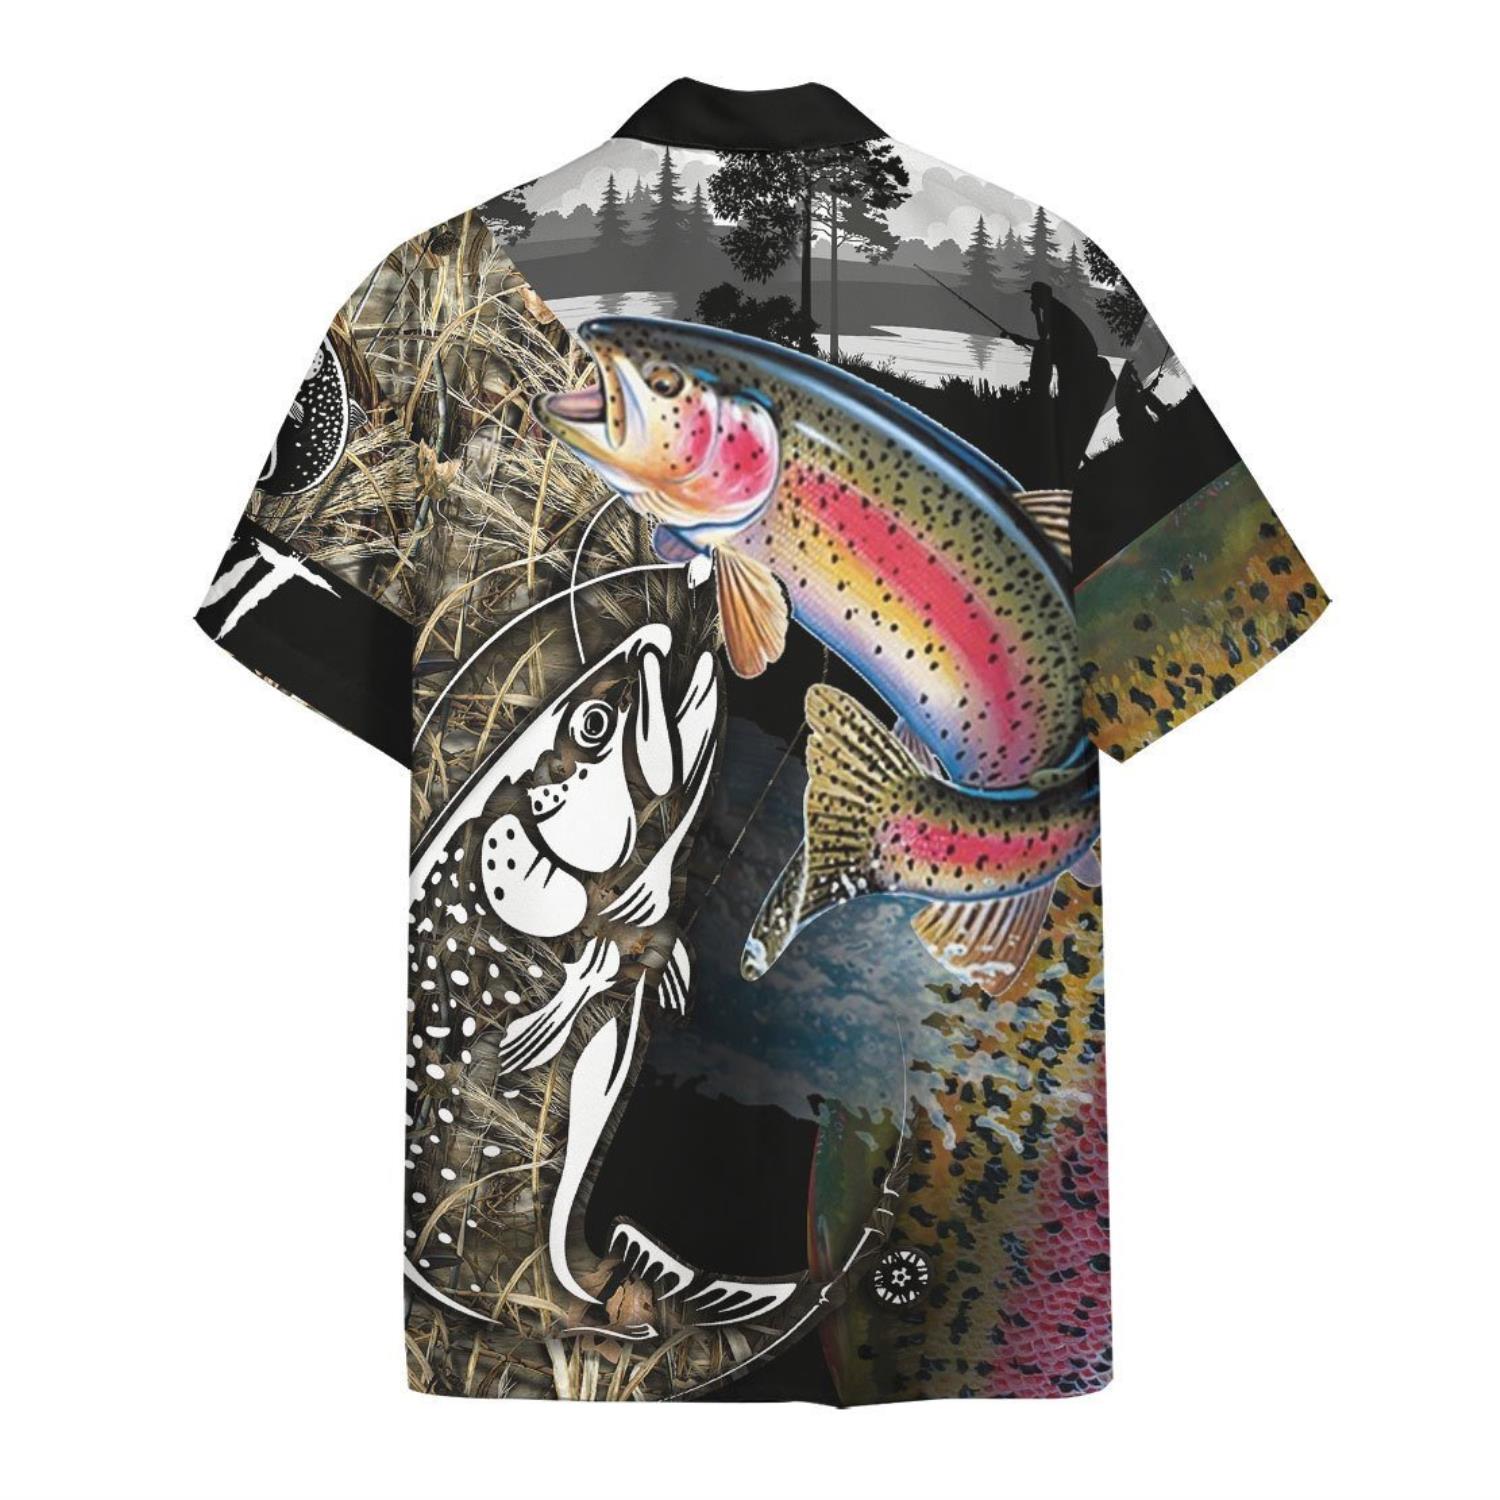 Fishing Shirts Hawaii Shirt For Men Trout Fish Fishing Hawaiian Shirt